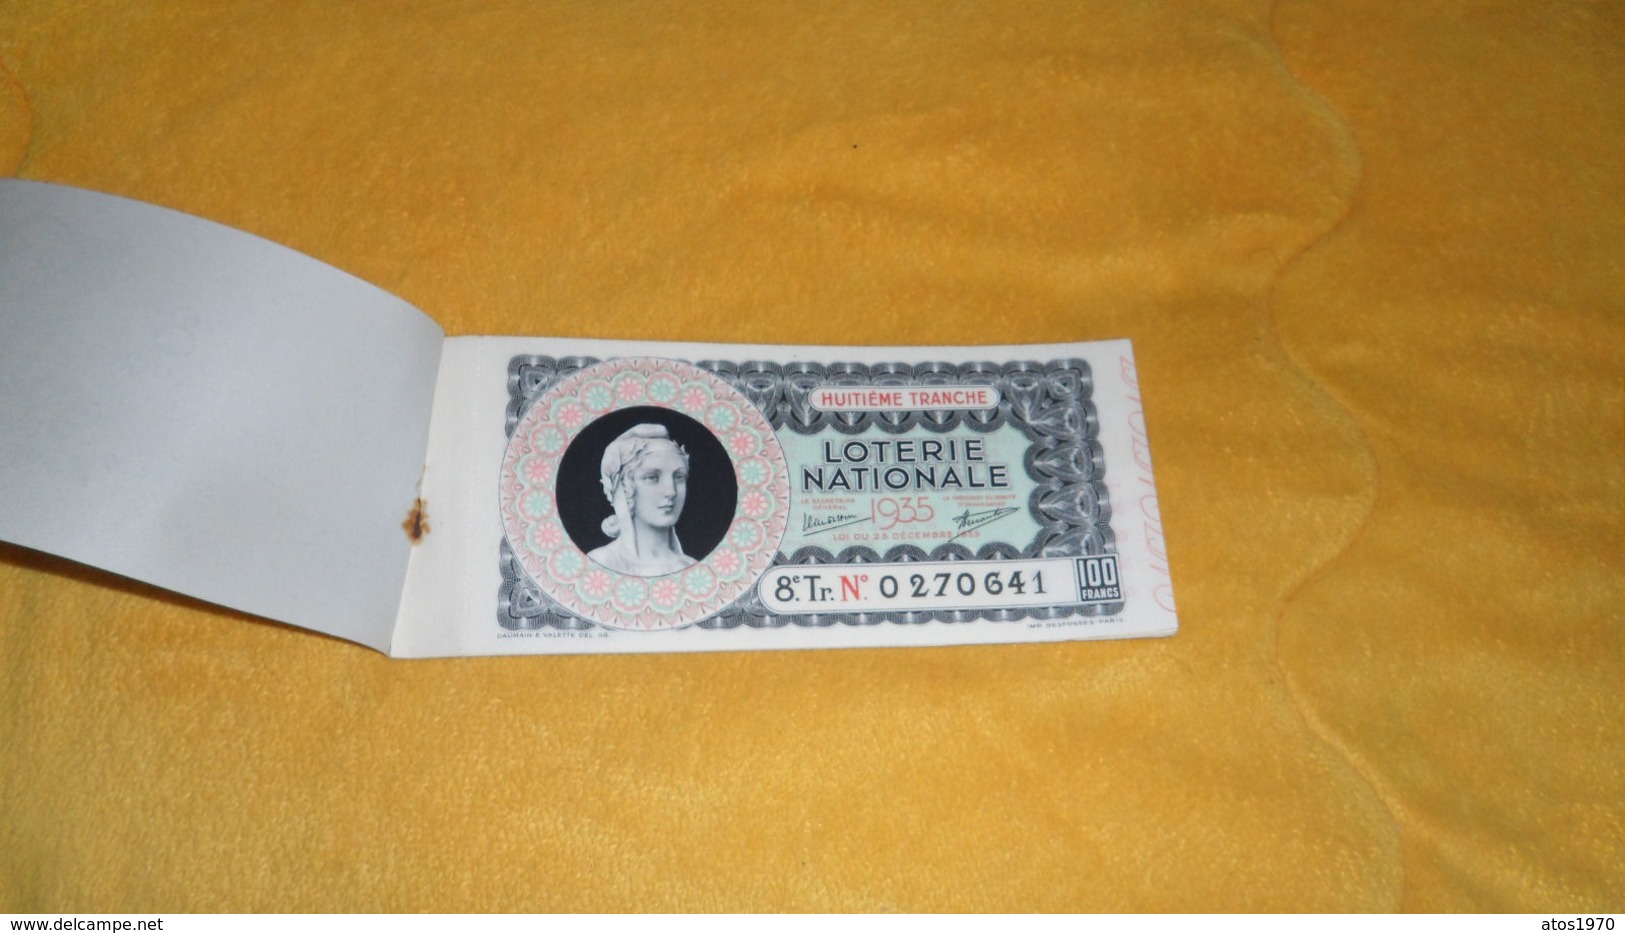 CARNET DE TICKET 100 FRANCS DE LOTERIE NATIONALE 1935 / 9 BILLETS 8e TRANCHE - Billets De Loterie